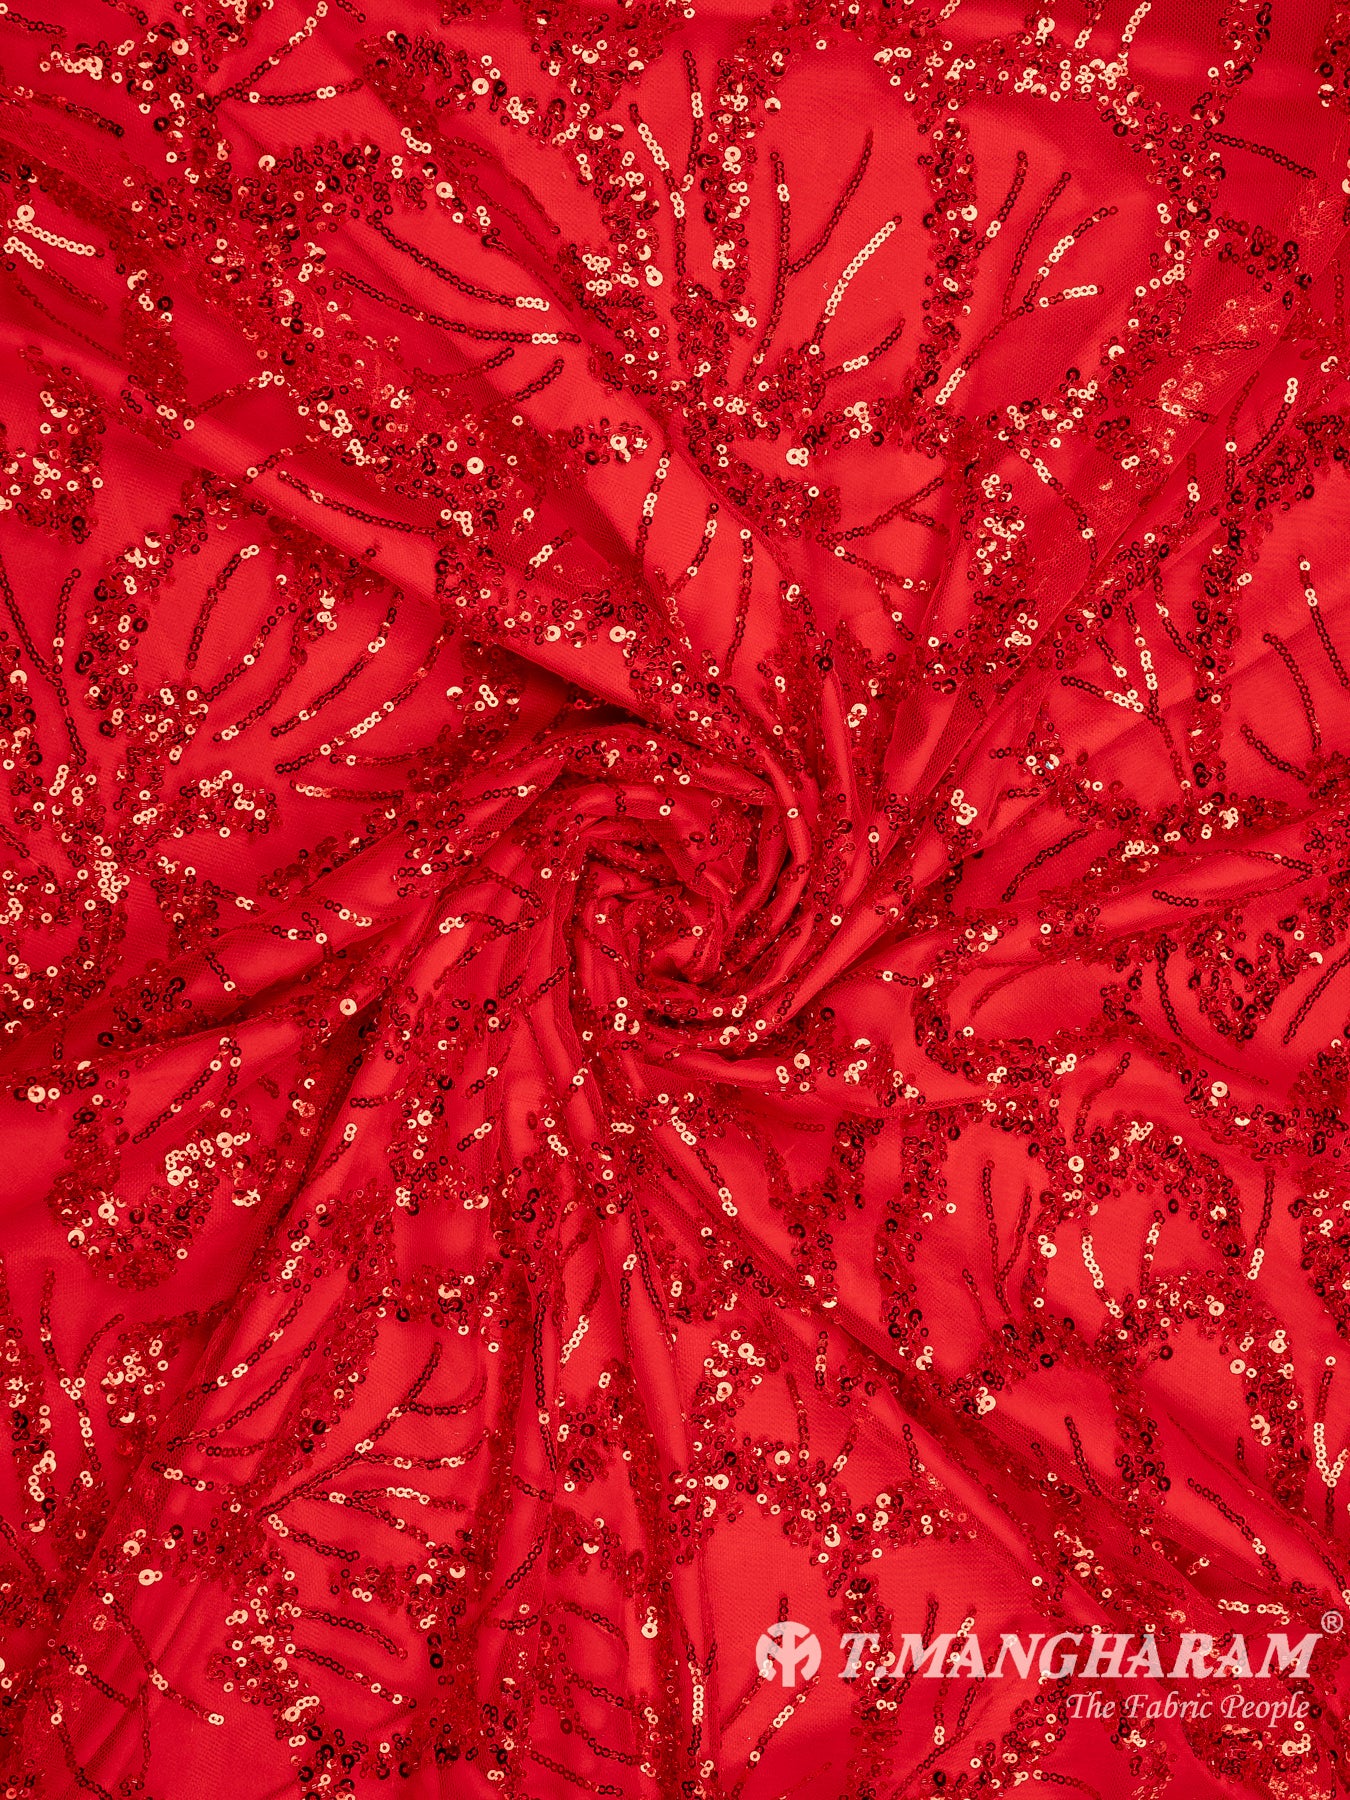 Red Sequin Net Fabric - EC9333 view-1